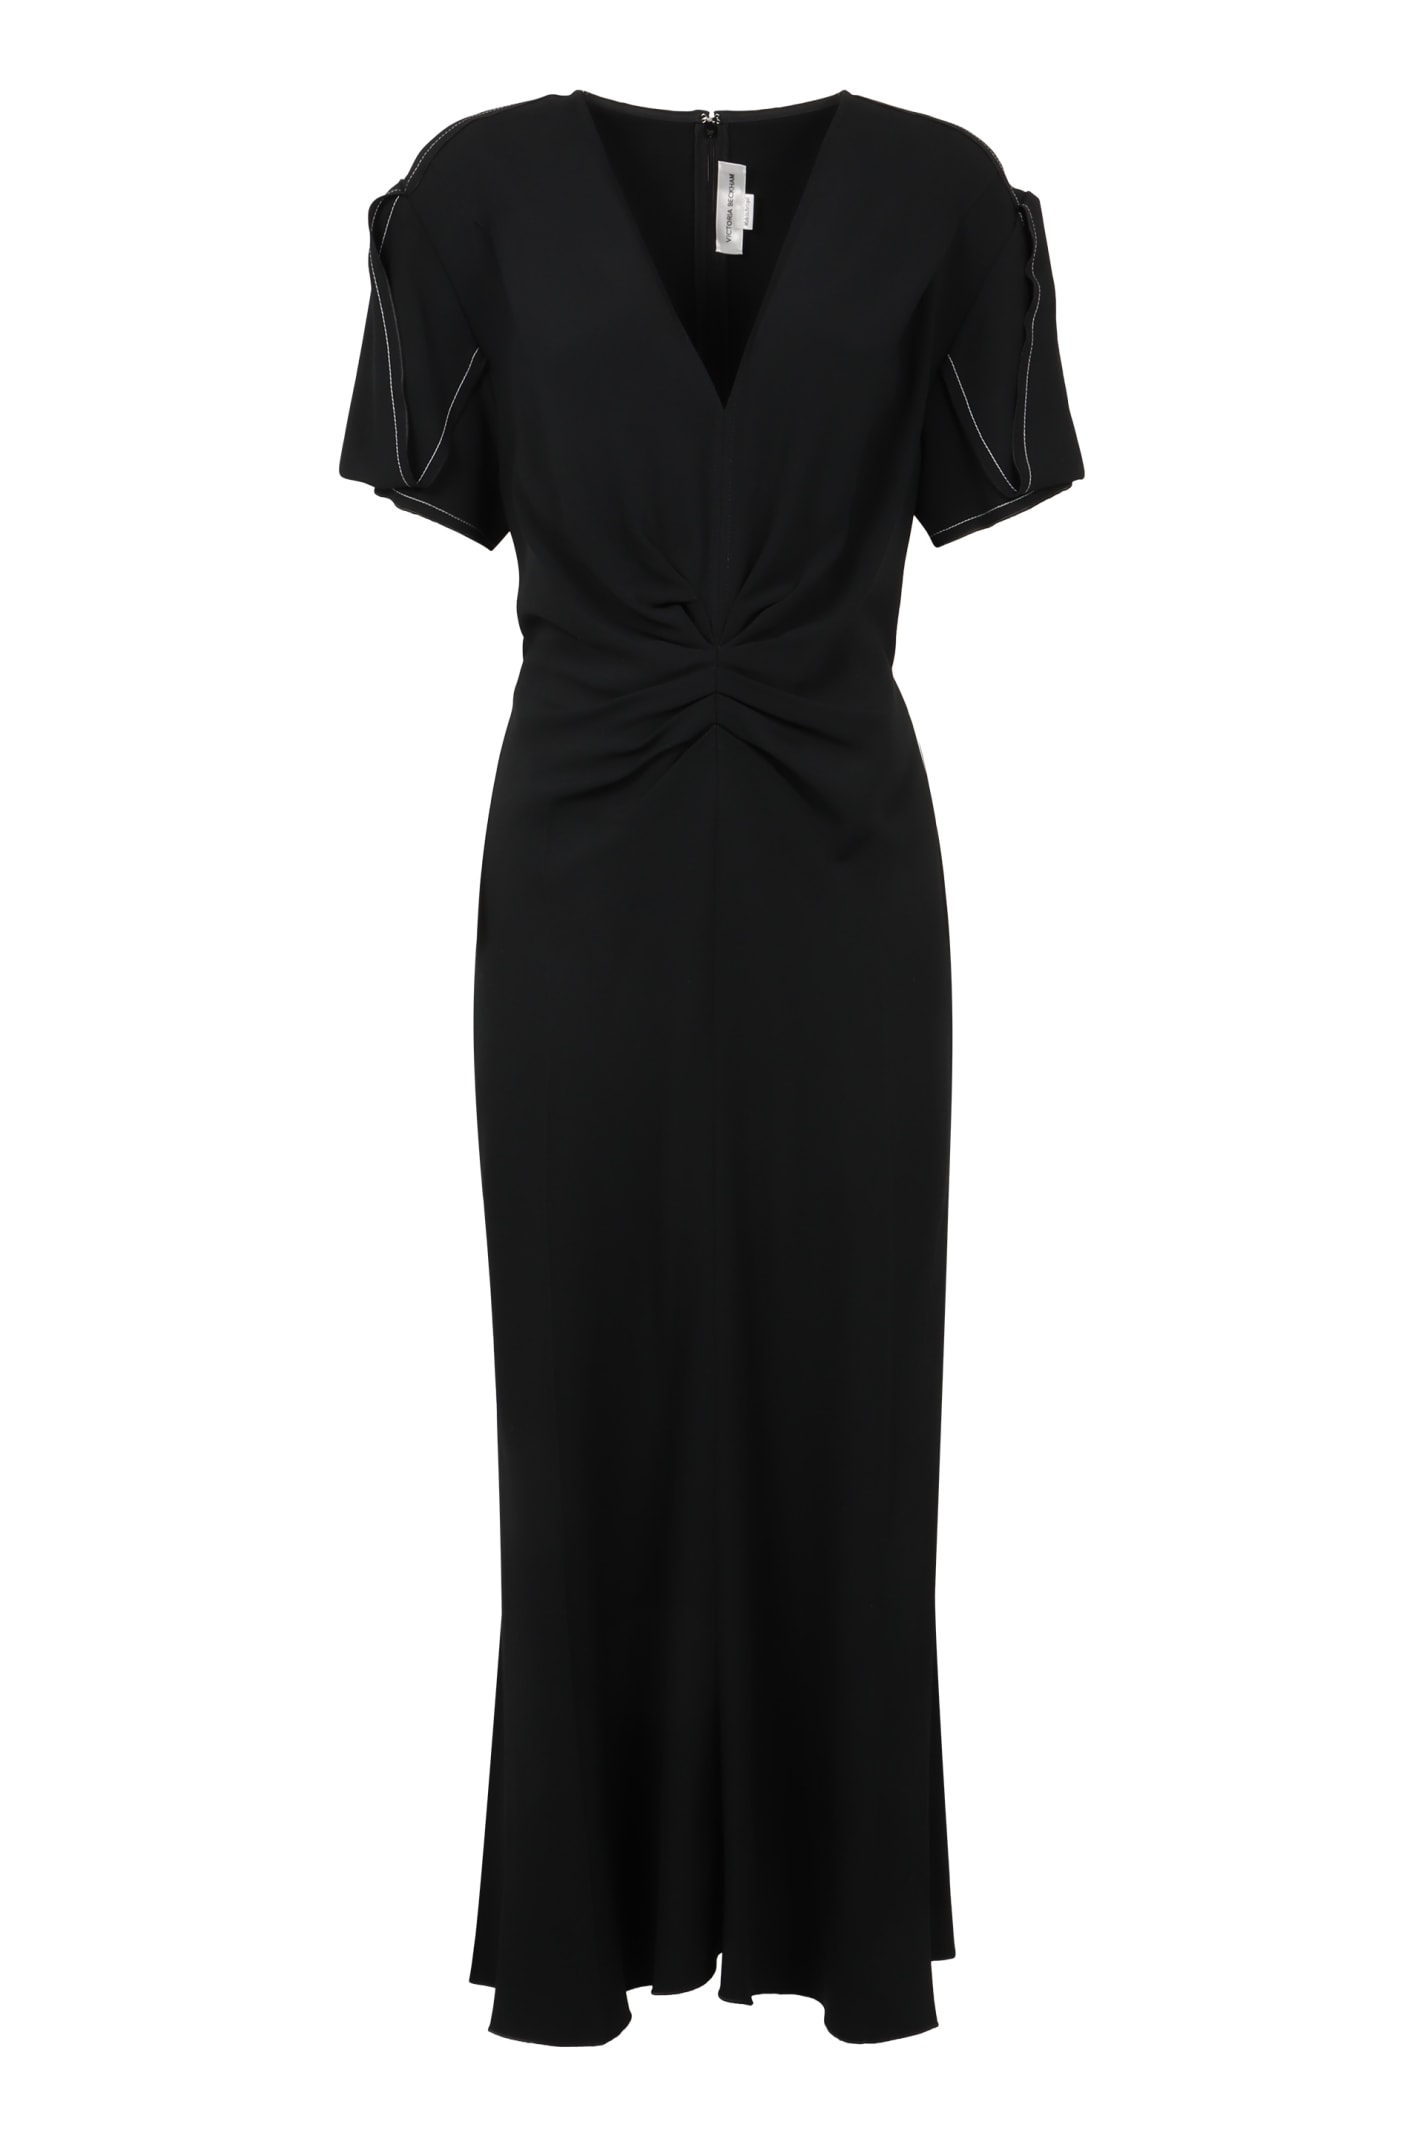 Victoria Beckham Stretch Viscose Dress In Black